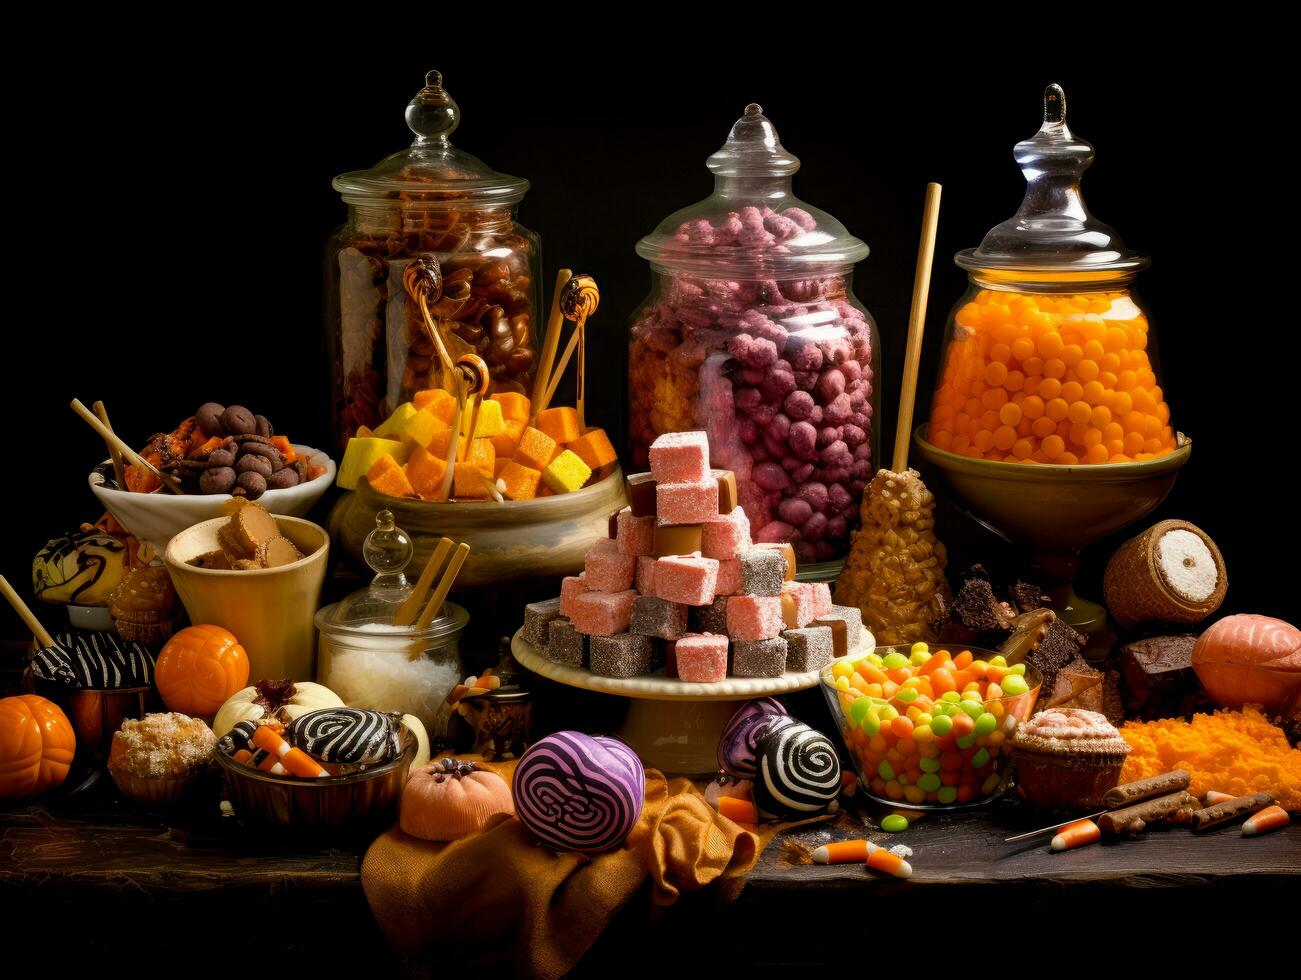 image de collection de Halloween à thème des sucreries et biscuits photo